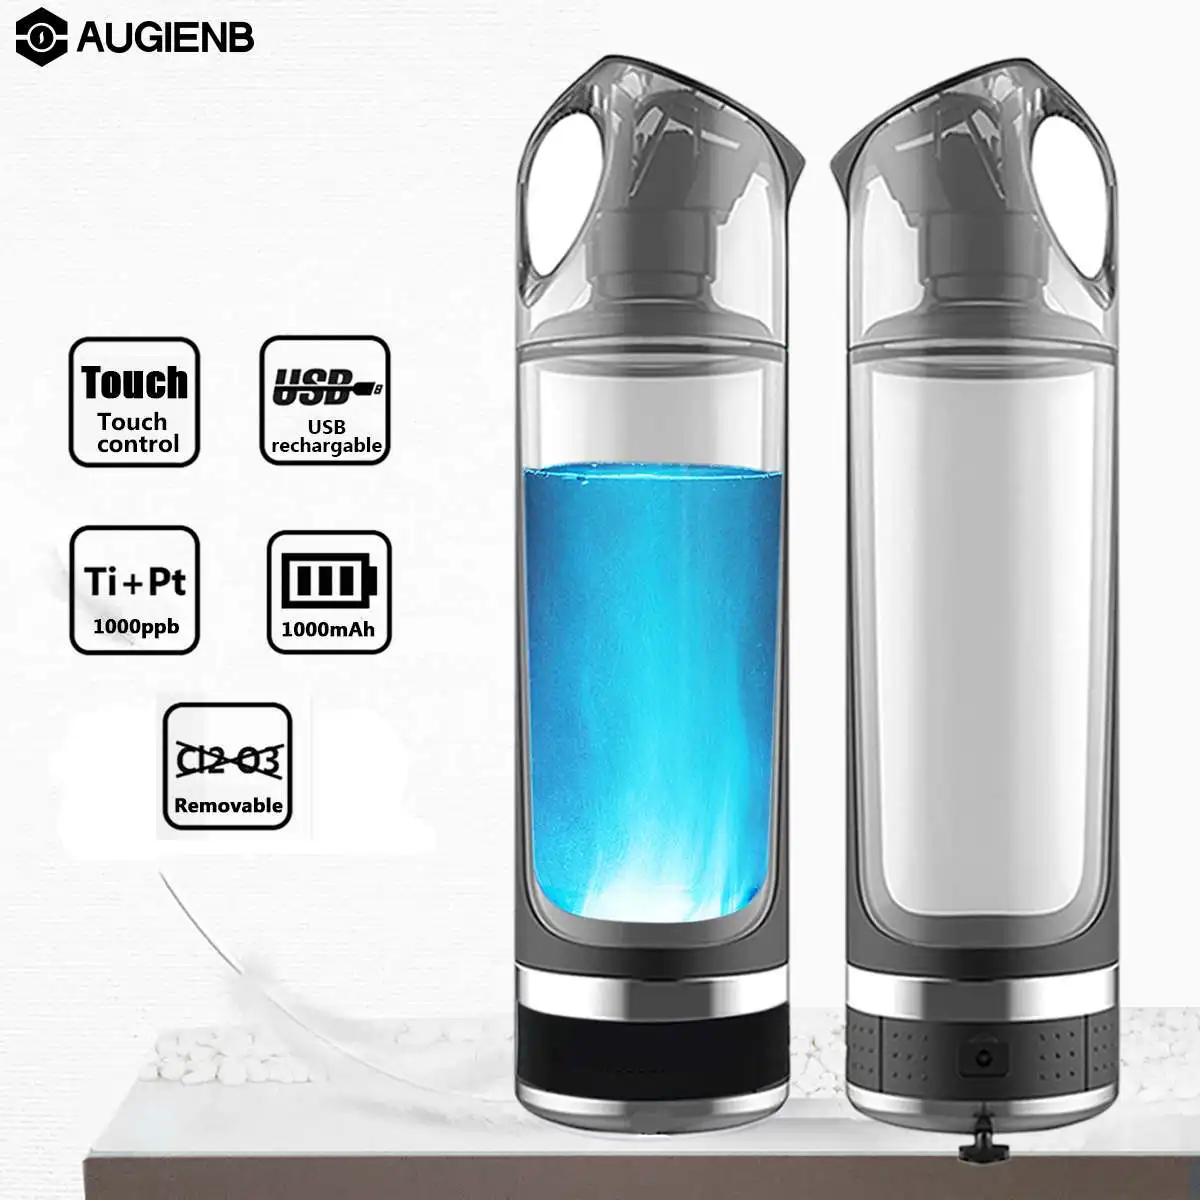 

AUGIENB 500ML Healthy Anti-Aging Hydrogen Rich Water Bottle USB Rechargeable Generator Hydrogen Rich Water Maker Ionizer